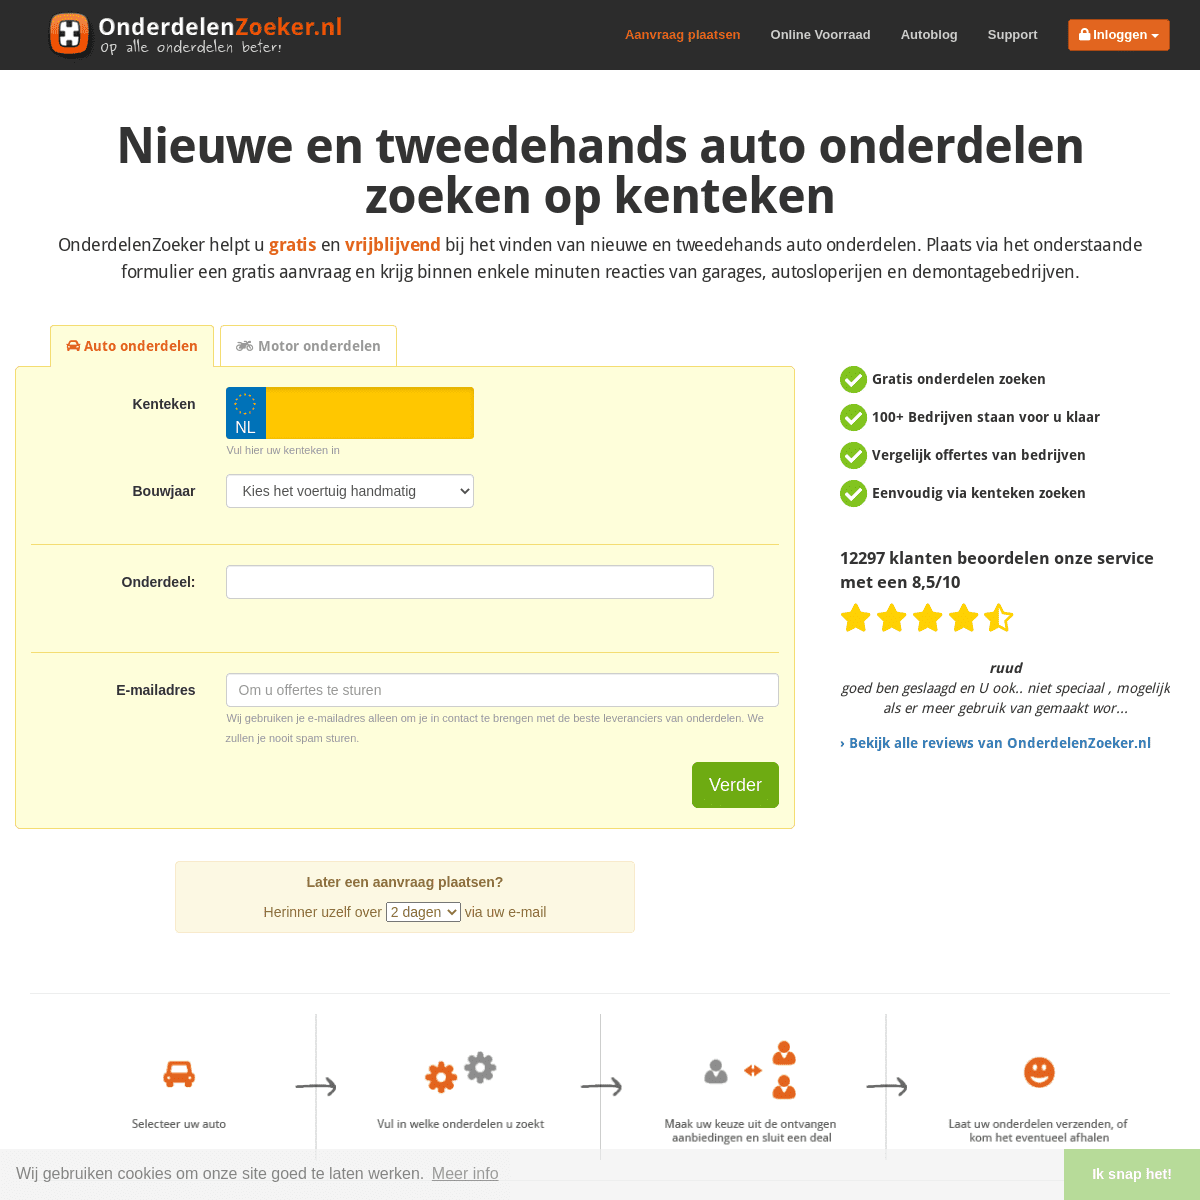 A complete backup of https://onderdelenzoeker.nl